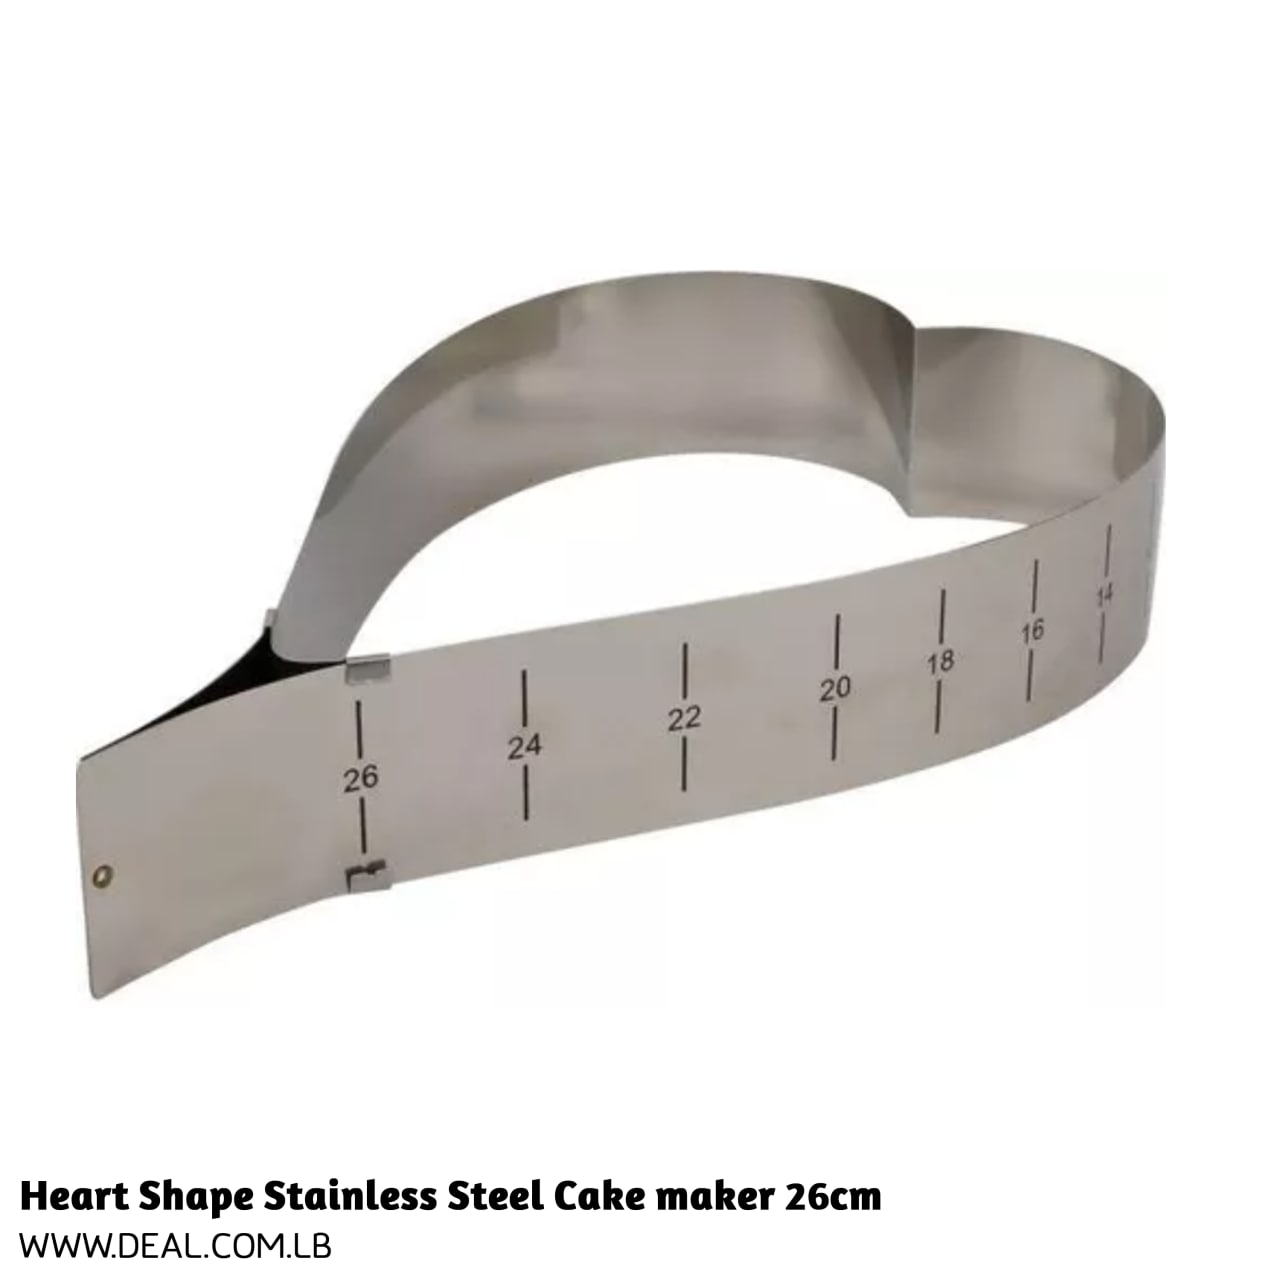 Heart Shape Stainless Steel Cake maker 26cm